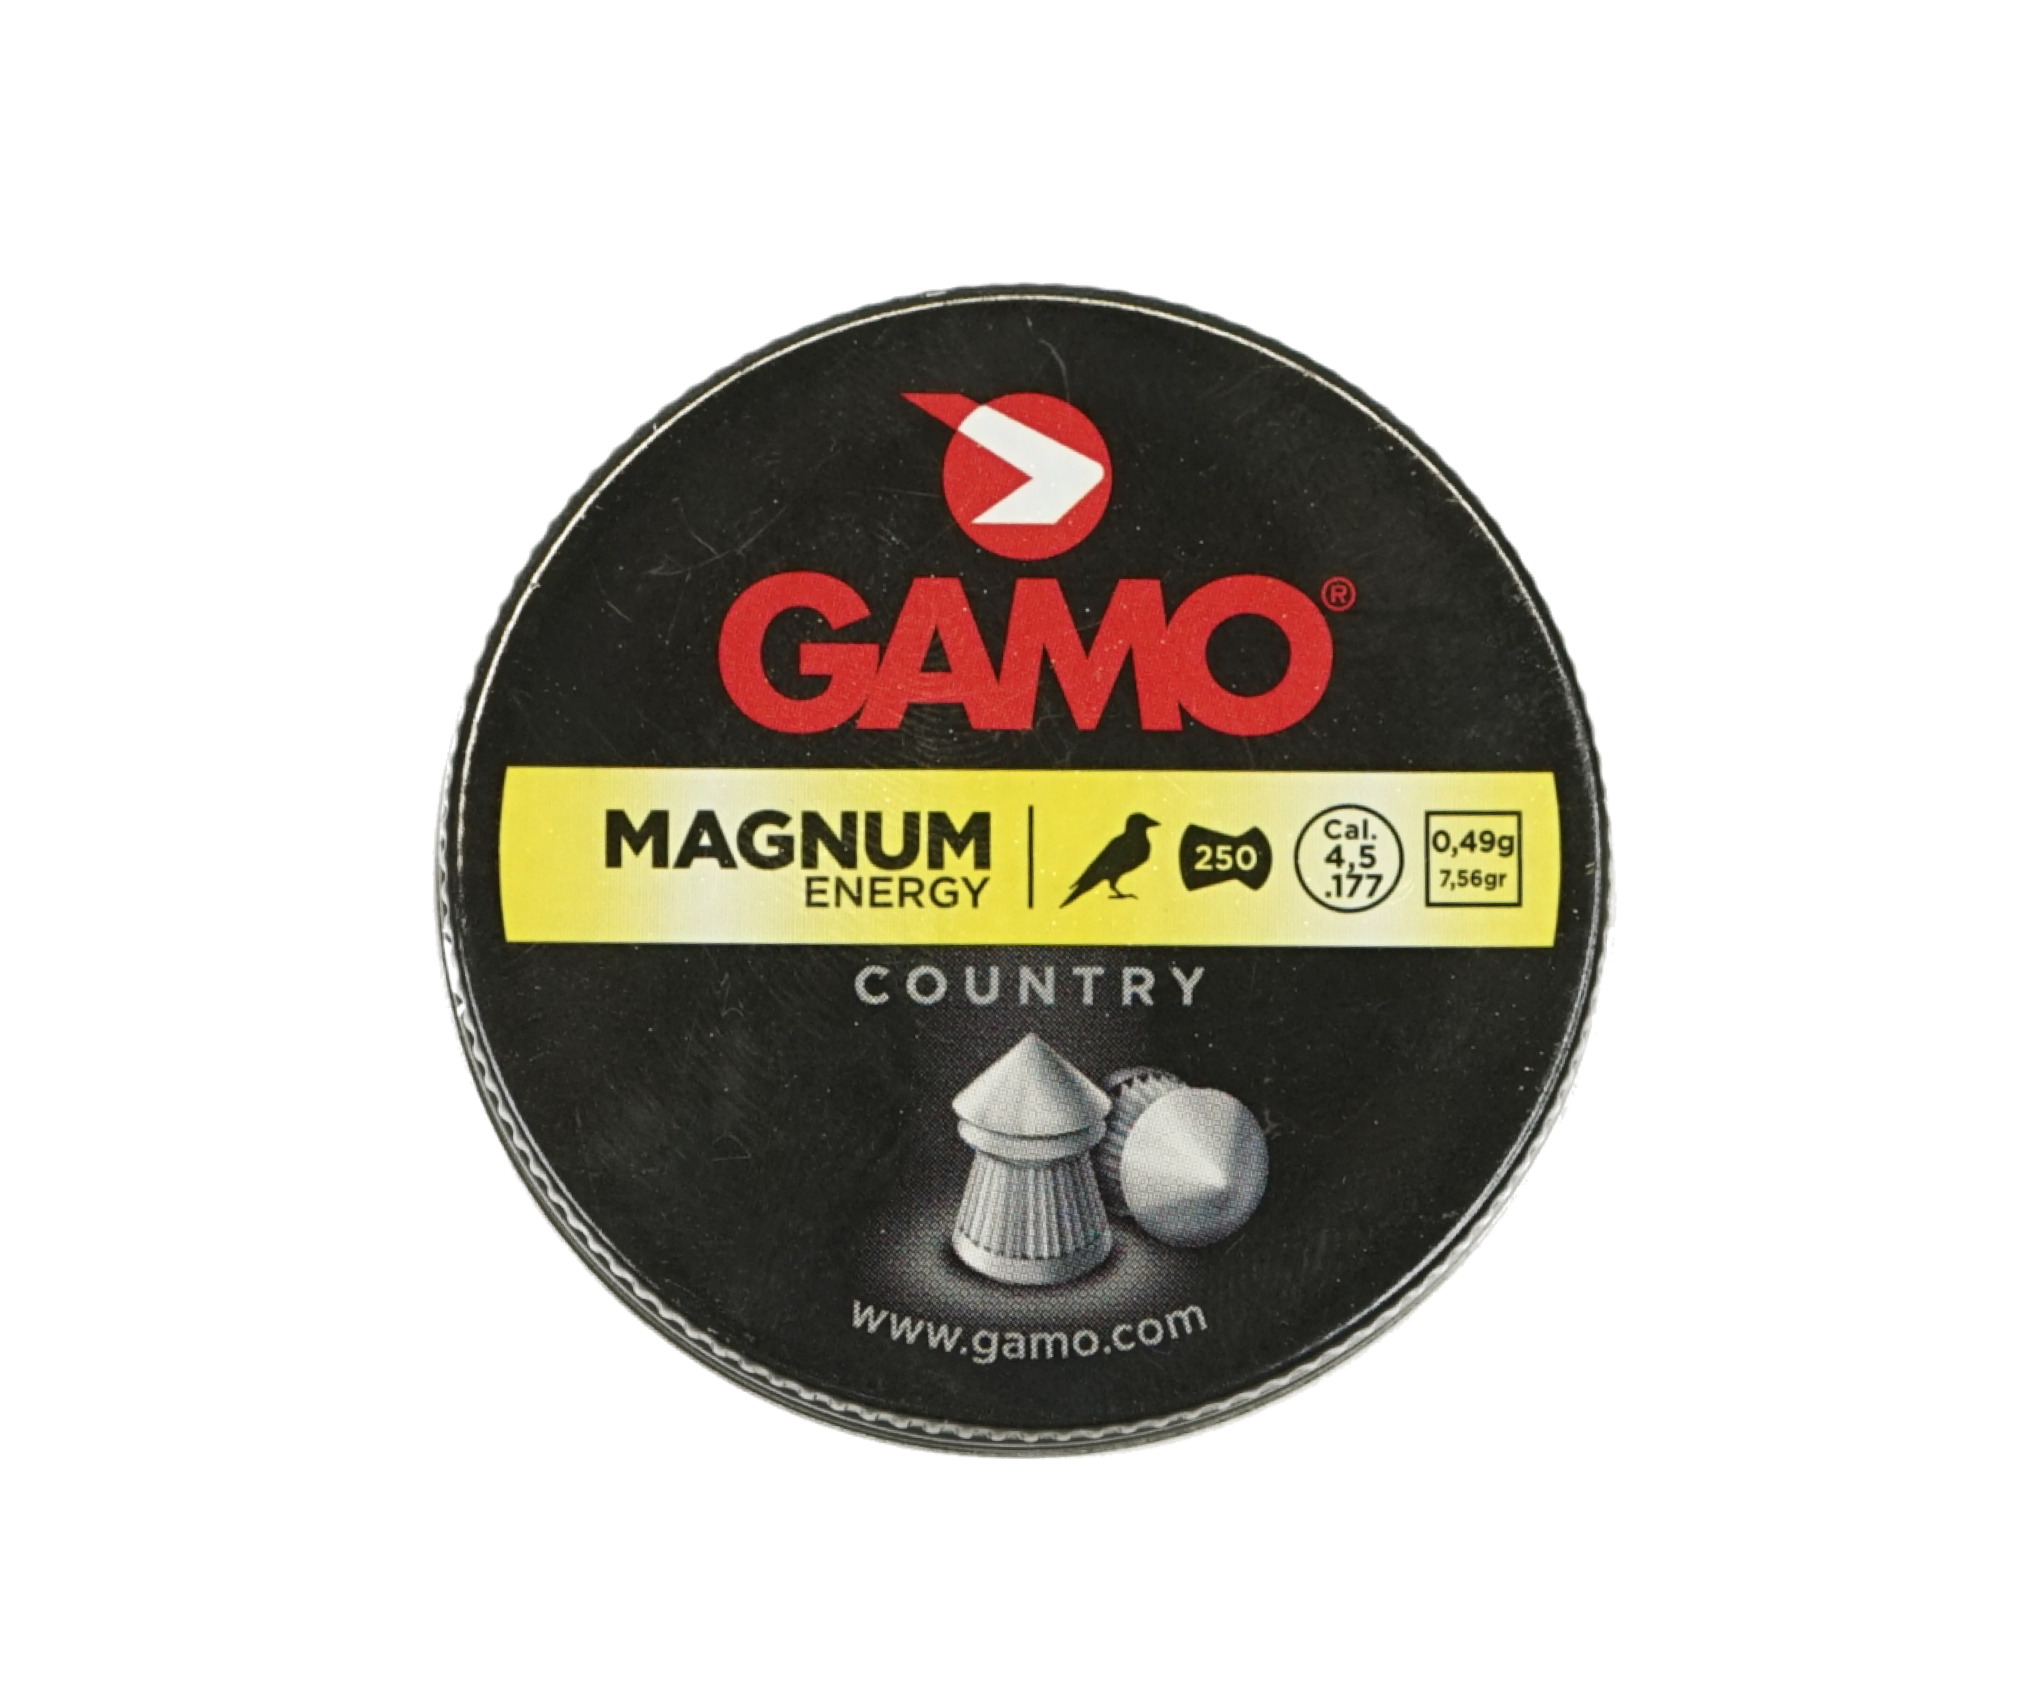 |Уценка| Пули Gamo Magnum 4,5 мм, 0,49 г (250 штук) (№ 6320224-399-УЦ)